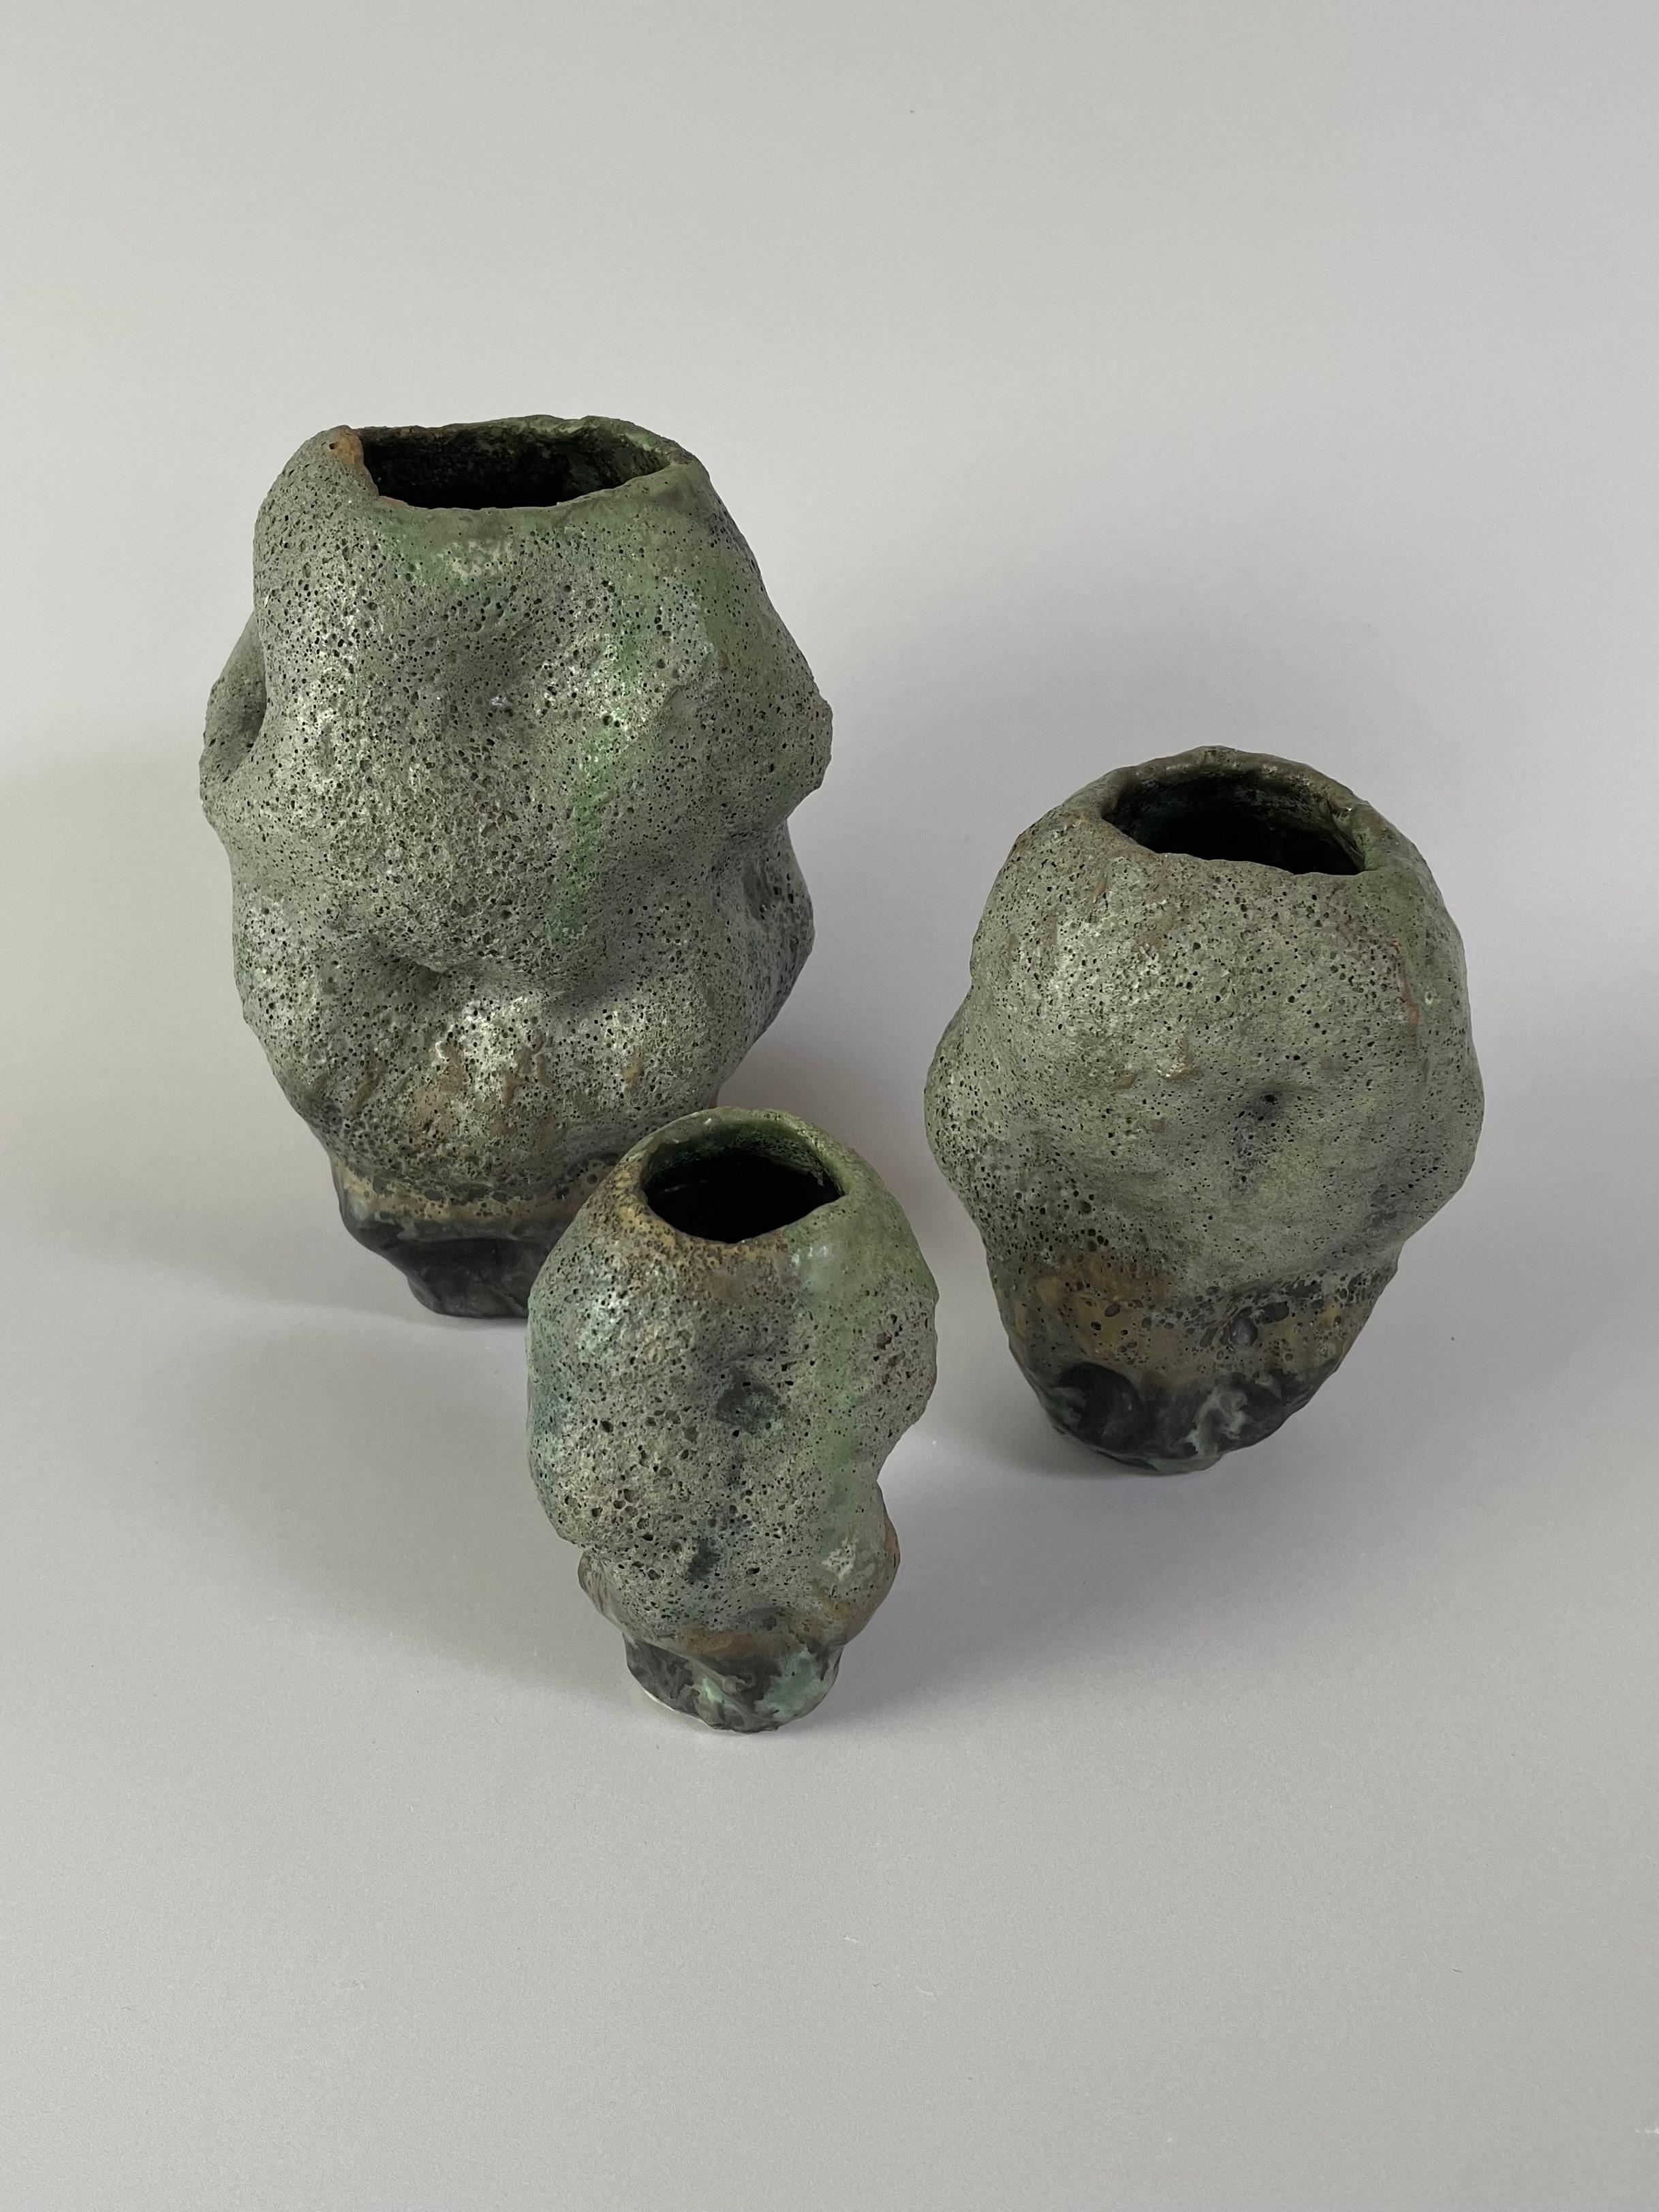 Diese drei Keramikvasen sind ein wichtiger Teil meiner Arbeit. Ich fertigte Vasen aus Spulenkeramik an, und diese entwickelten sich zu einer eher organischen, strukturierten Oberfläche. Daraus haben sich meine Arbeiten entwickelt, bei denen ich die